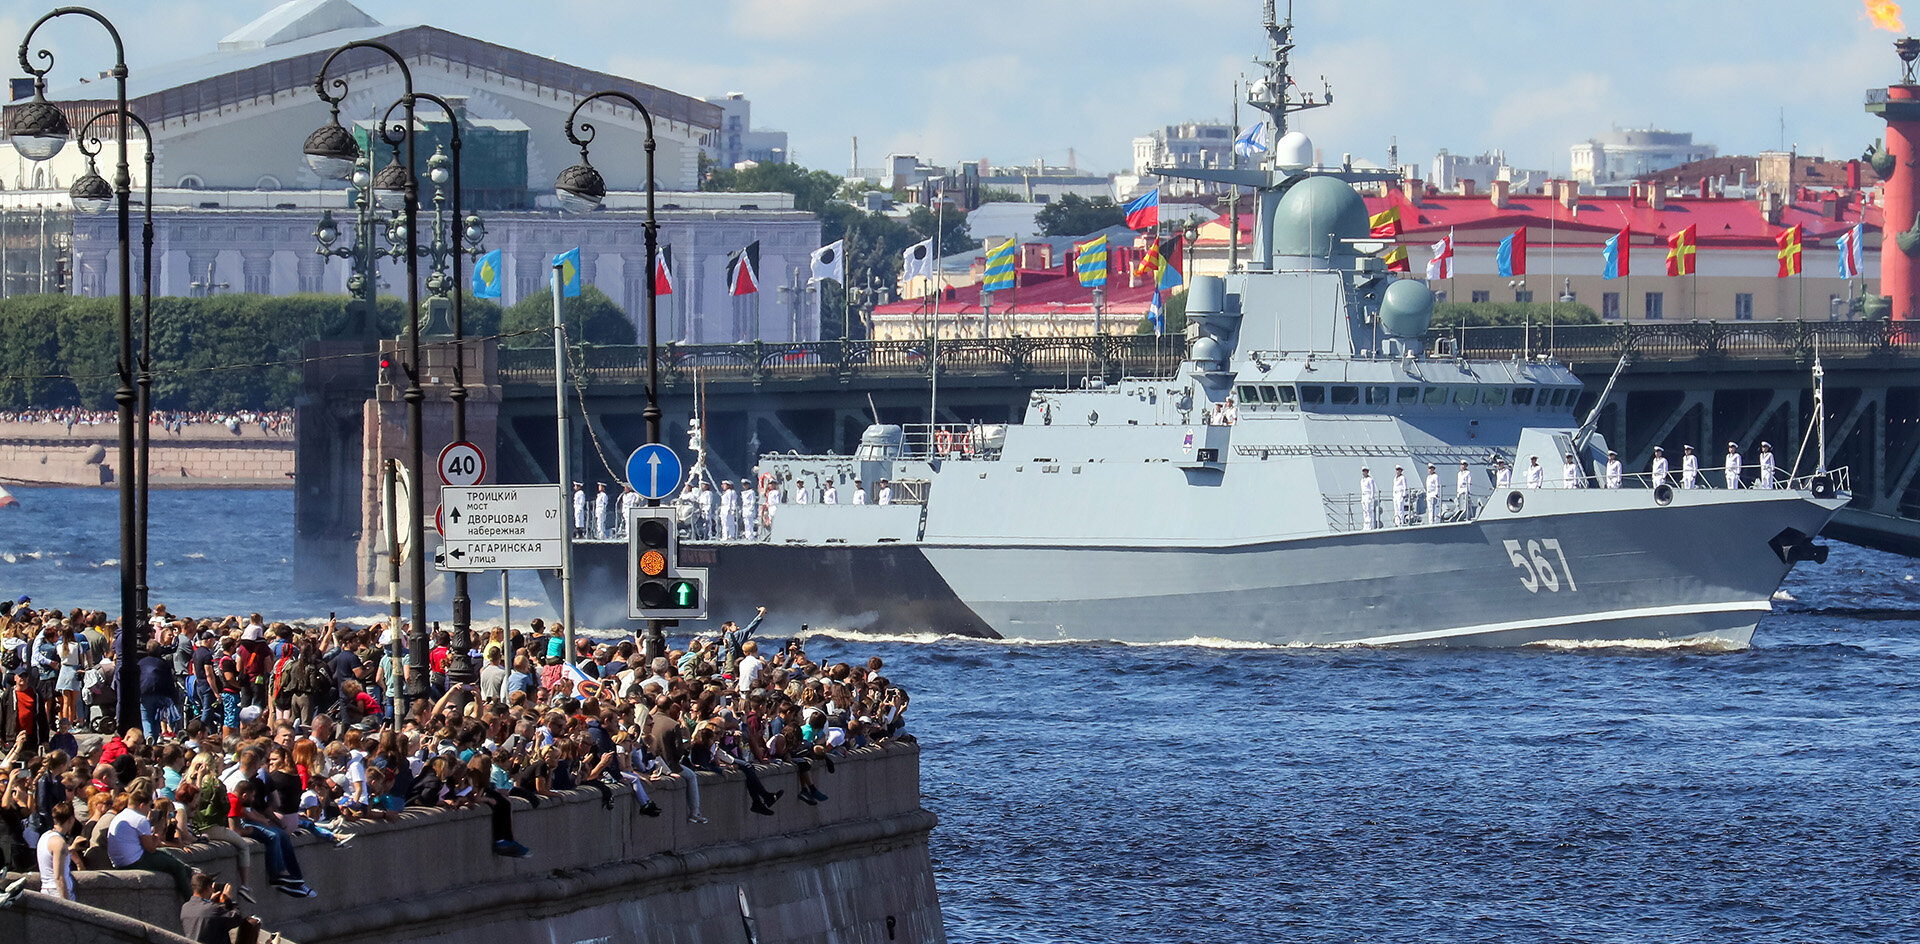 Полиция не смогла противостоять желанию петербуржцев увидеть главный военно-морской парад